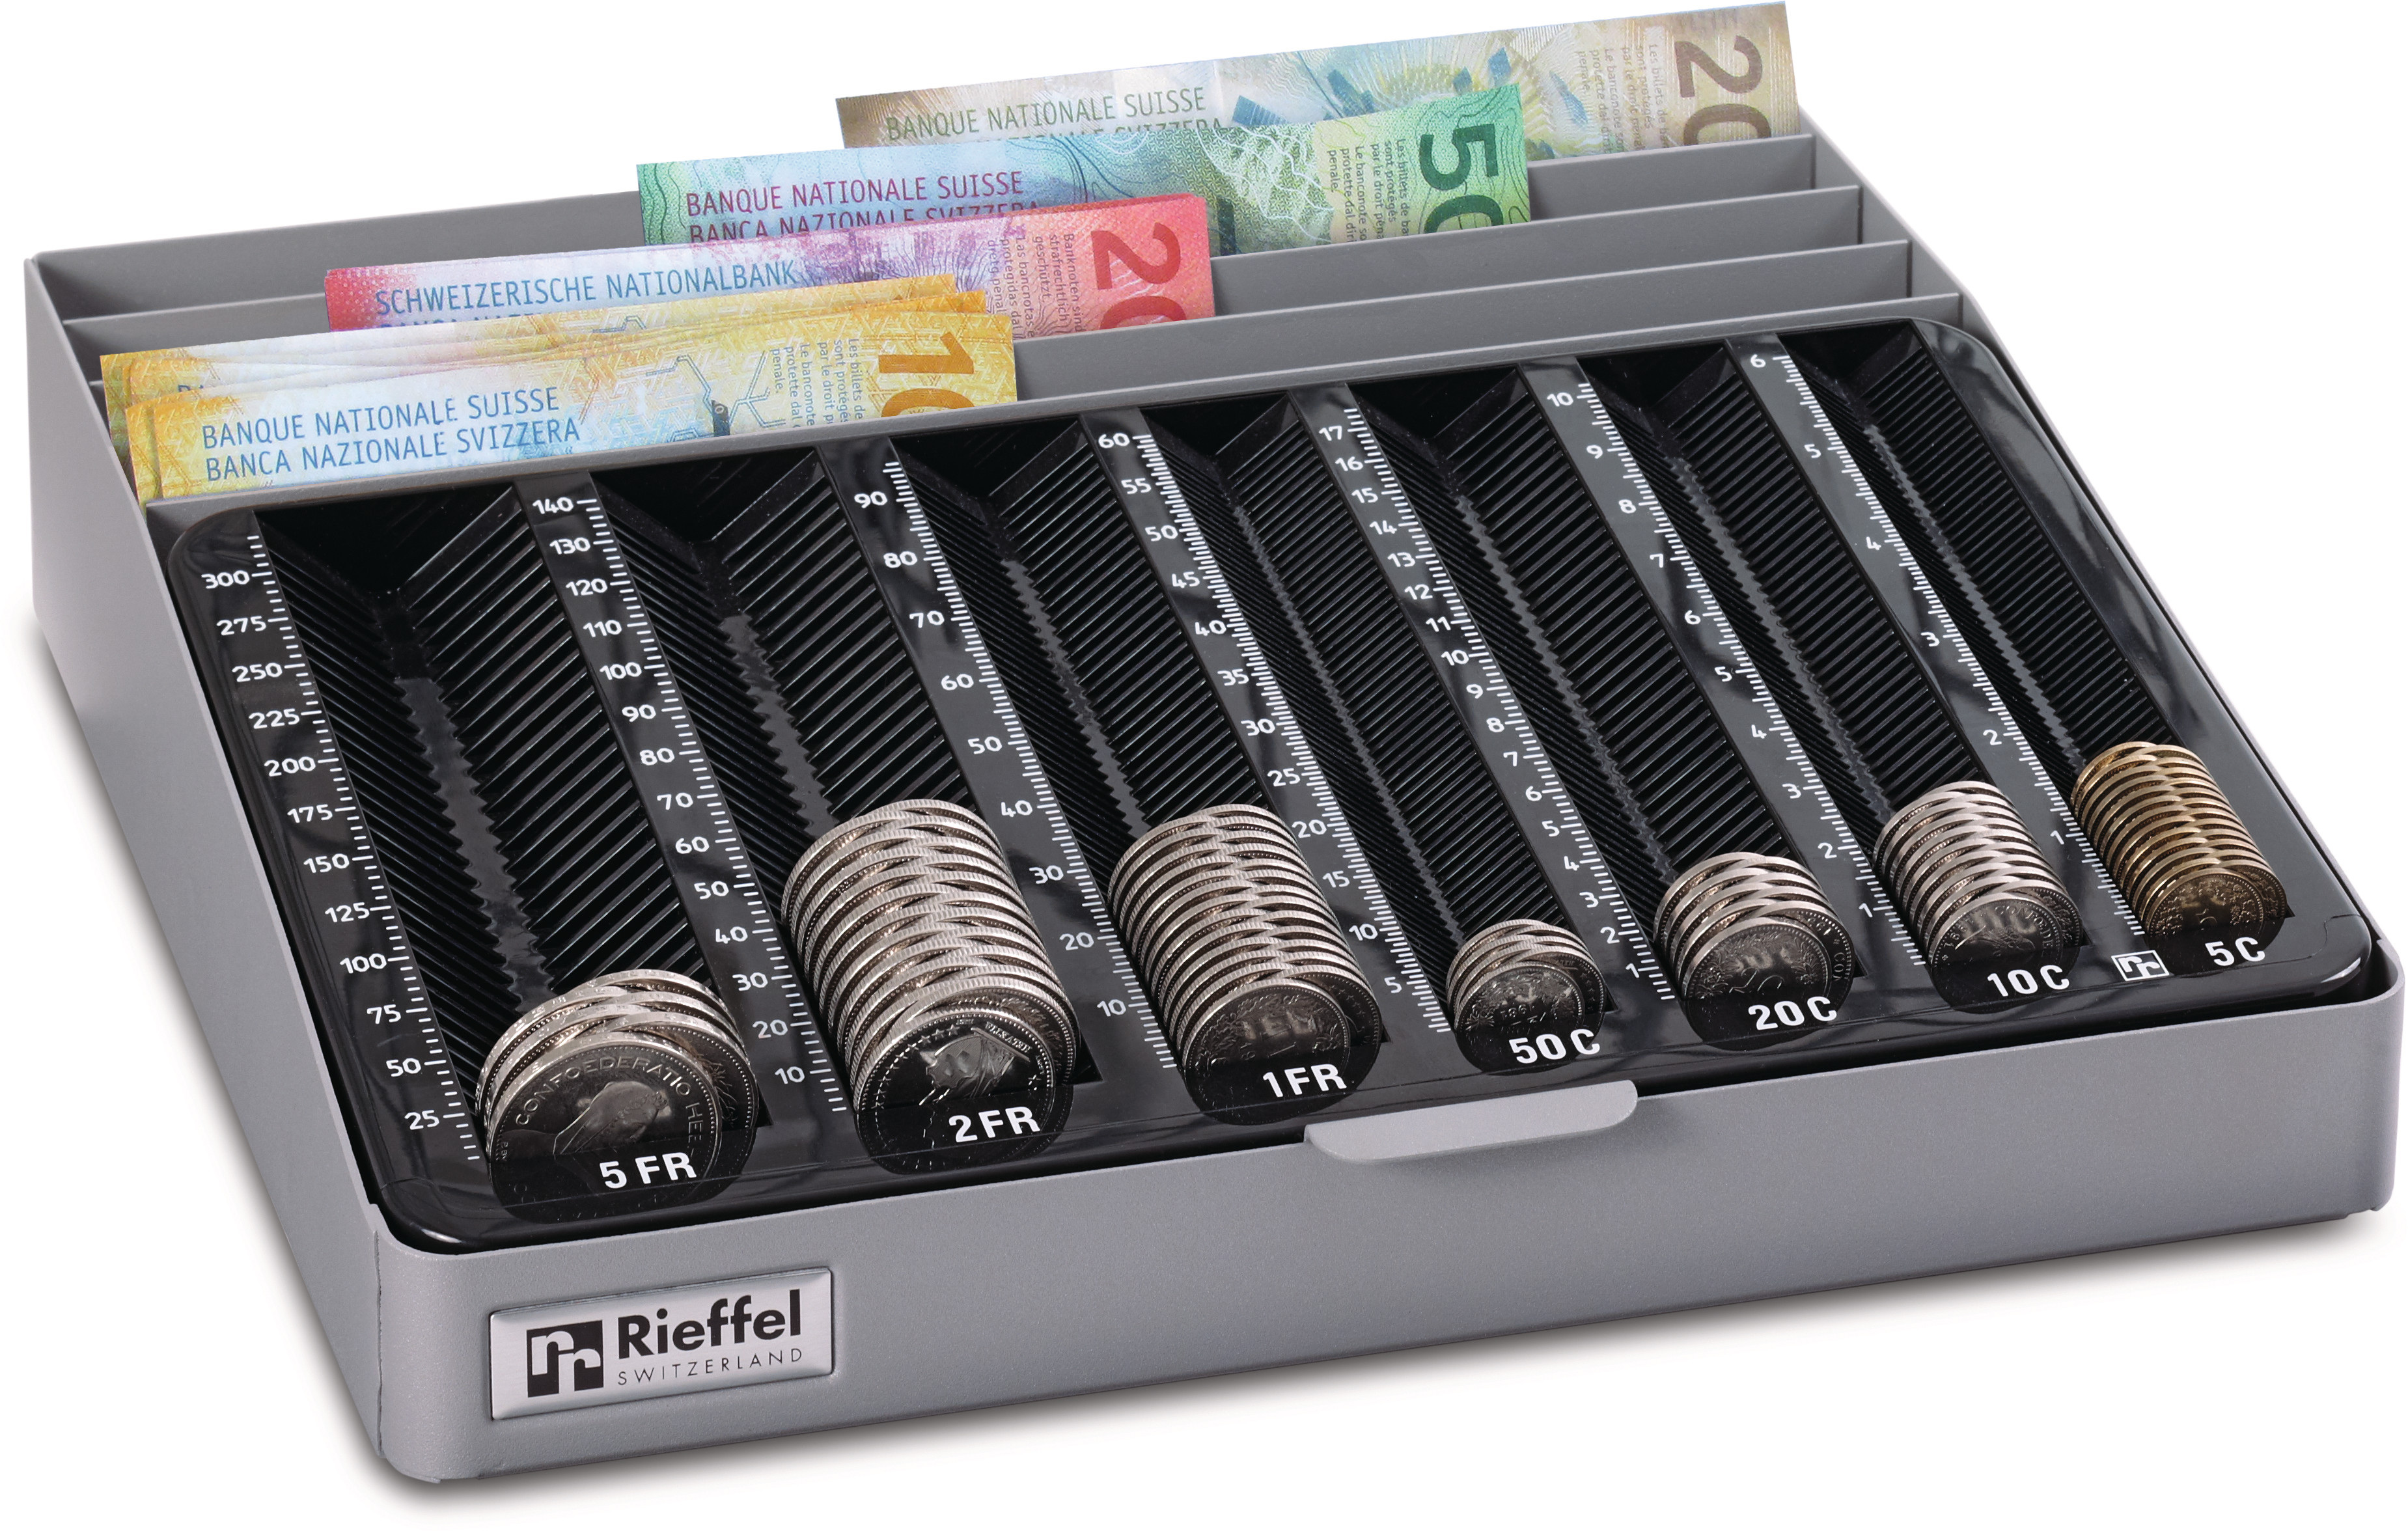 RIEFFEL SWITZERLAND Geldkassetten MONETAMOB für CHF 282x280x60mm